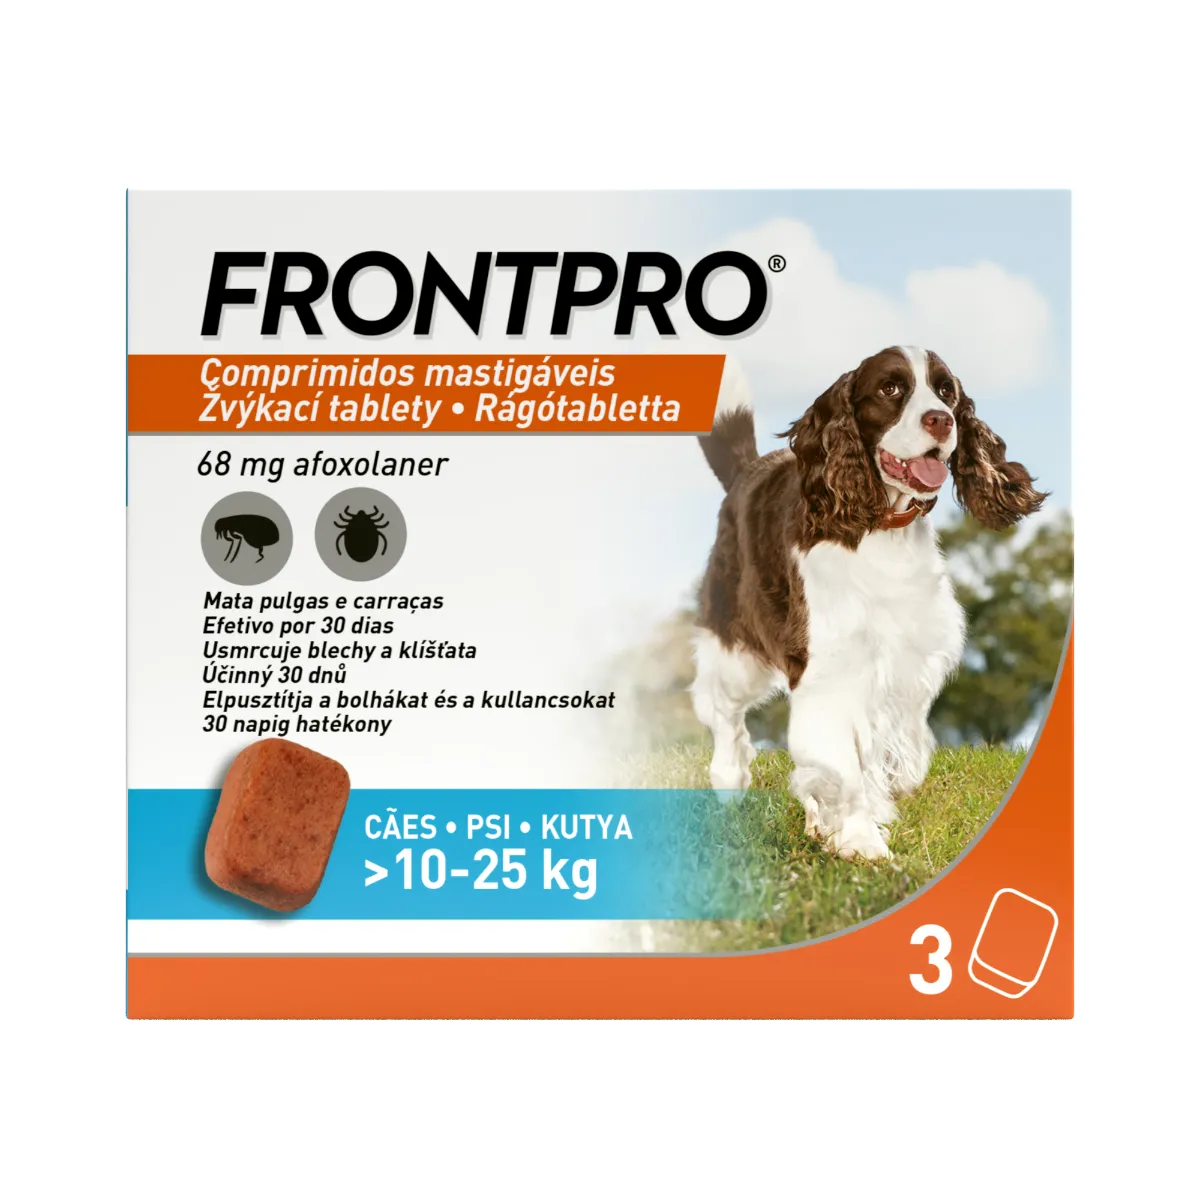 FRONTPRO® antiparazitárne žuvacie tablety pre psy (10-25 kg) 1×3 tbl, antiparazitárne tablety